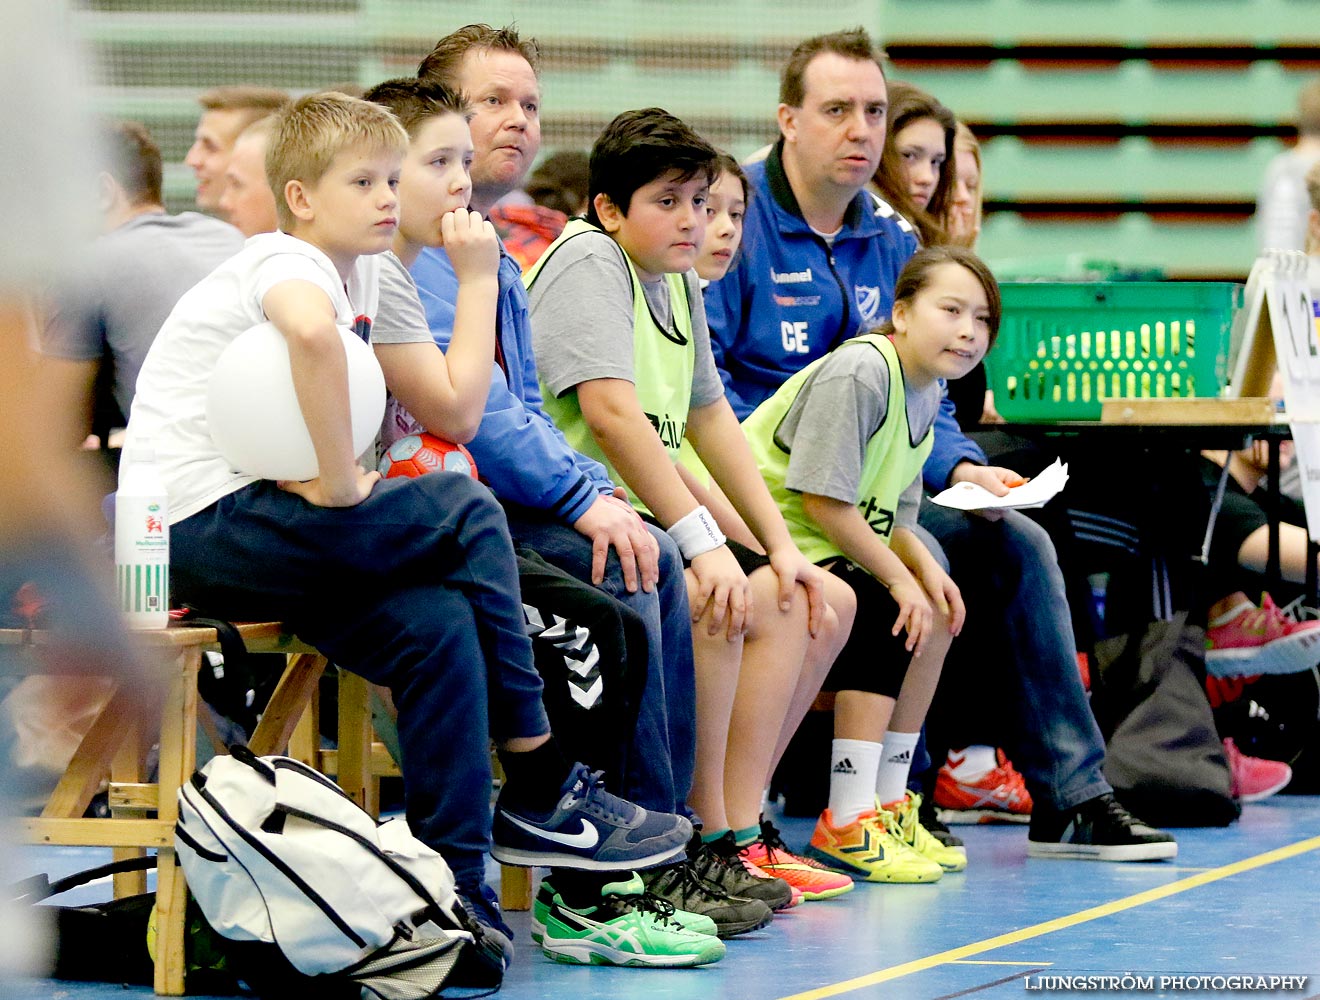 Klasshandboll Skövde 2015 Åldersklass 2003,mix,Arena Skövde,Skövde,Sverige,Handboll,,2015,105032